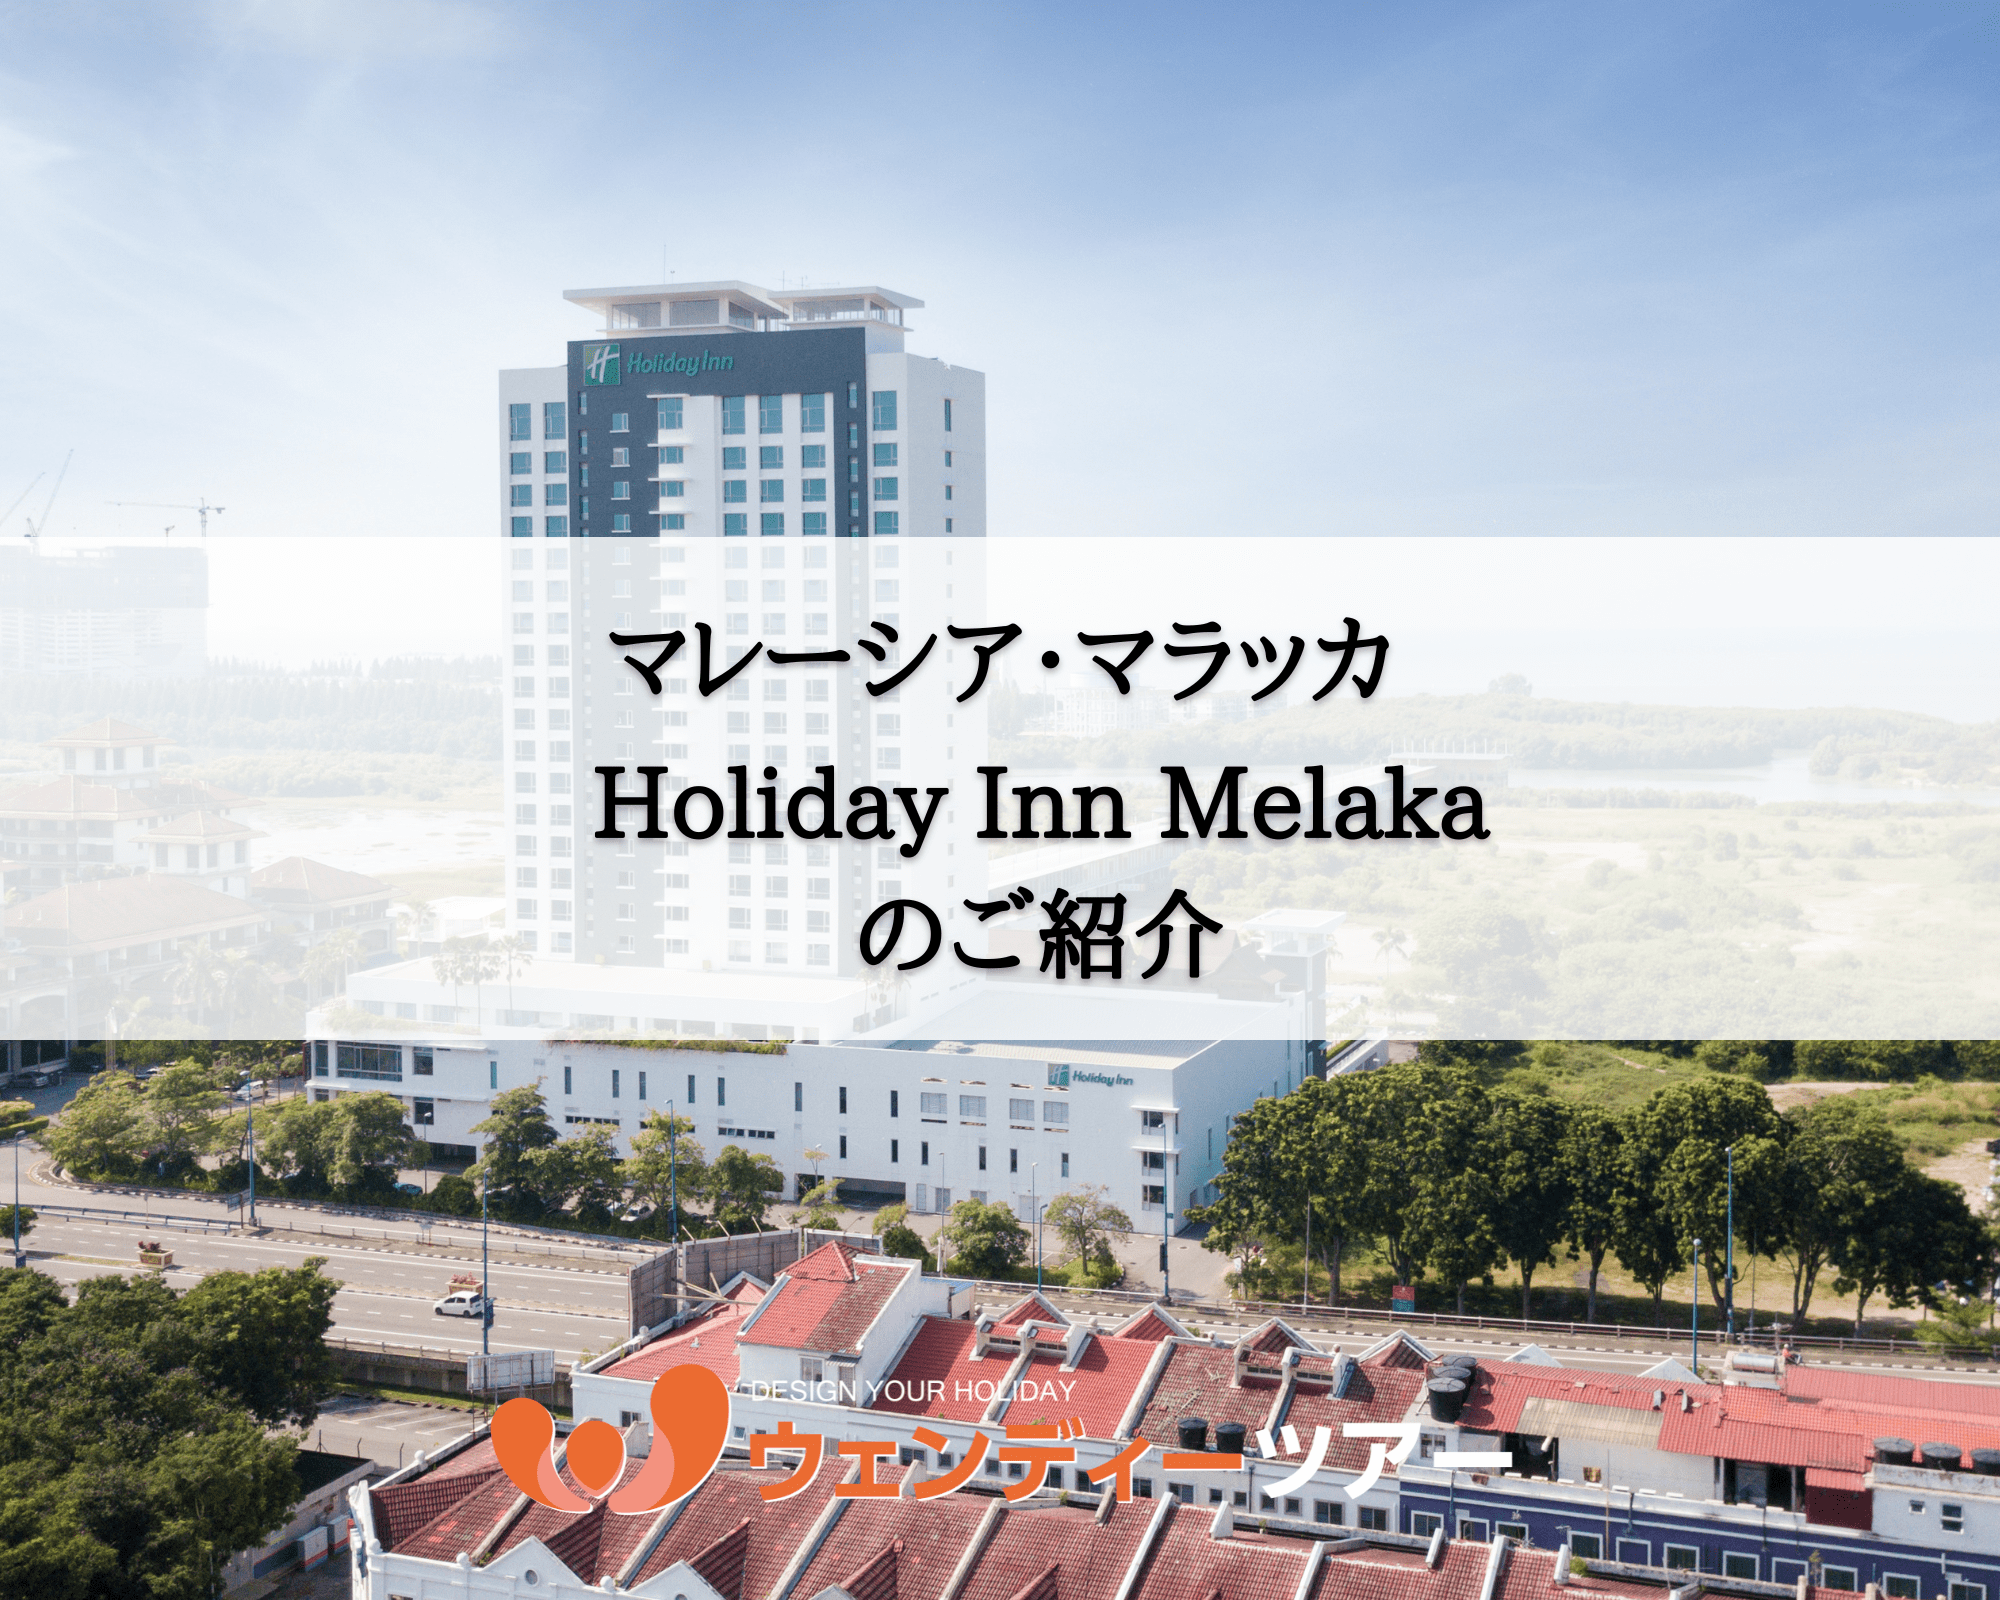 【マレーシア・マラッカ】Holiday Inn Melaka